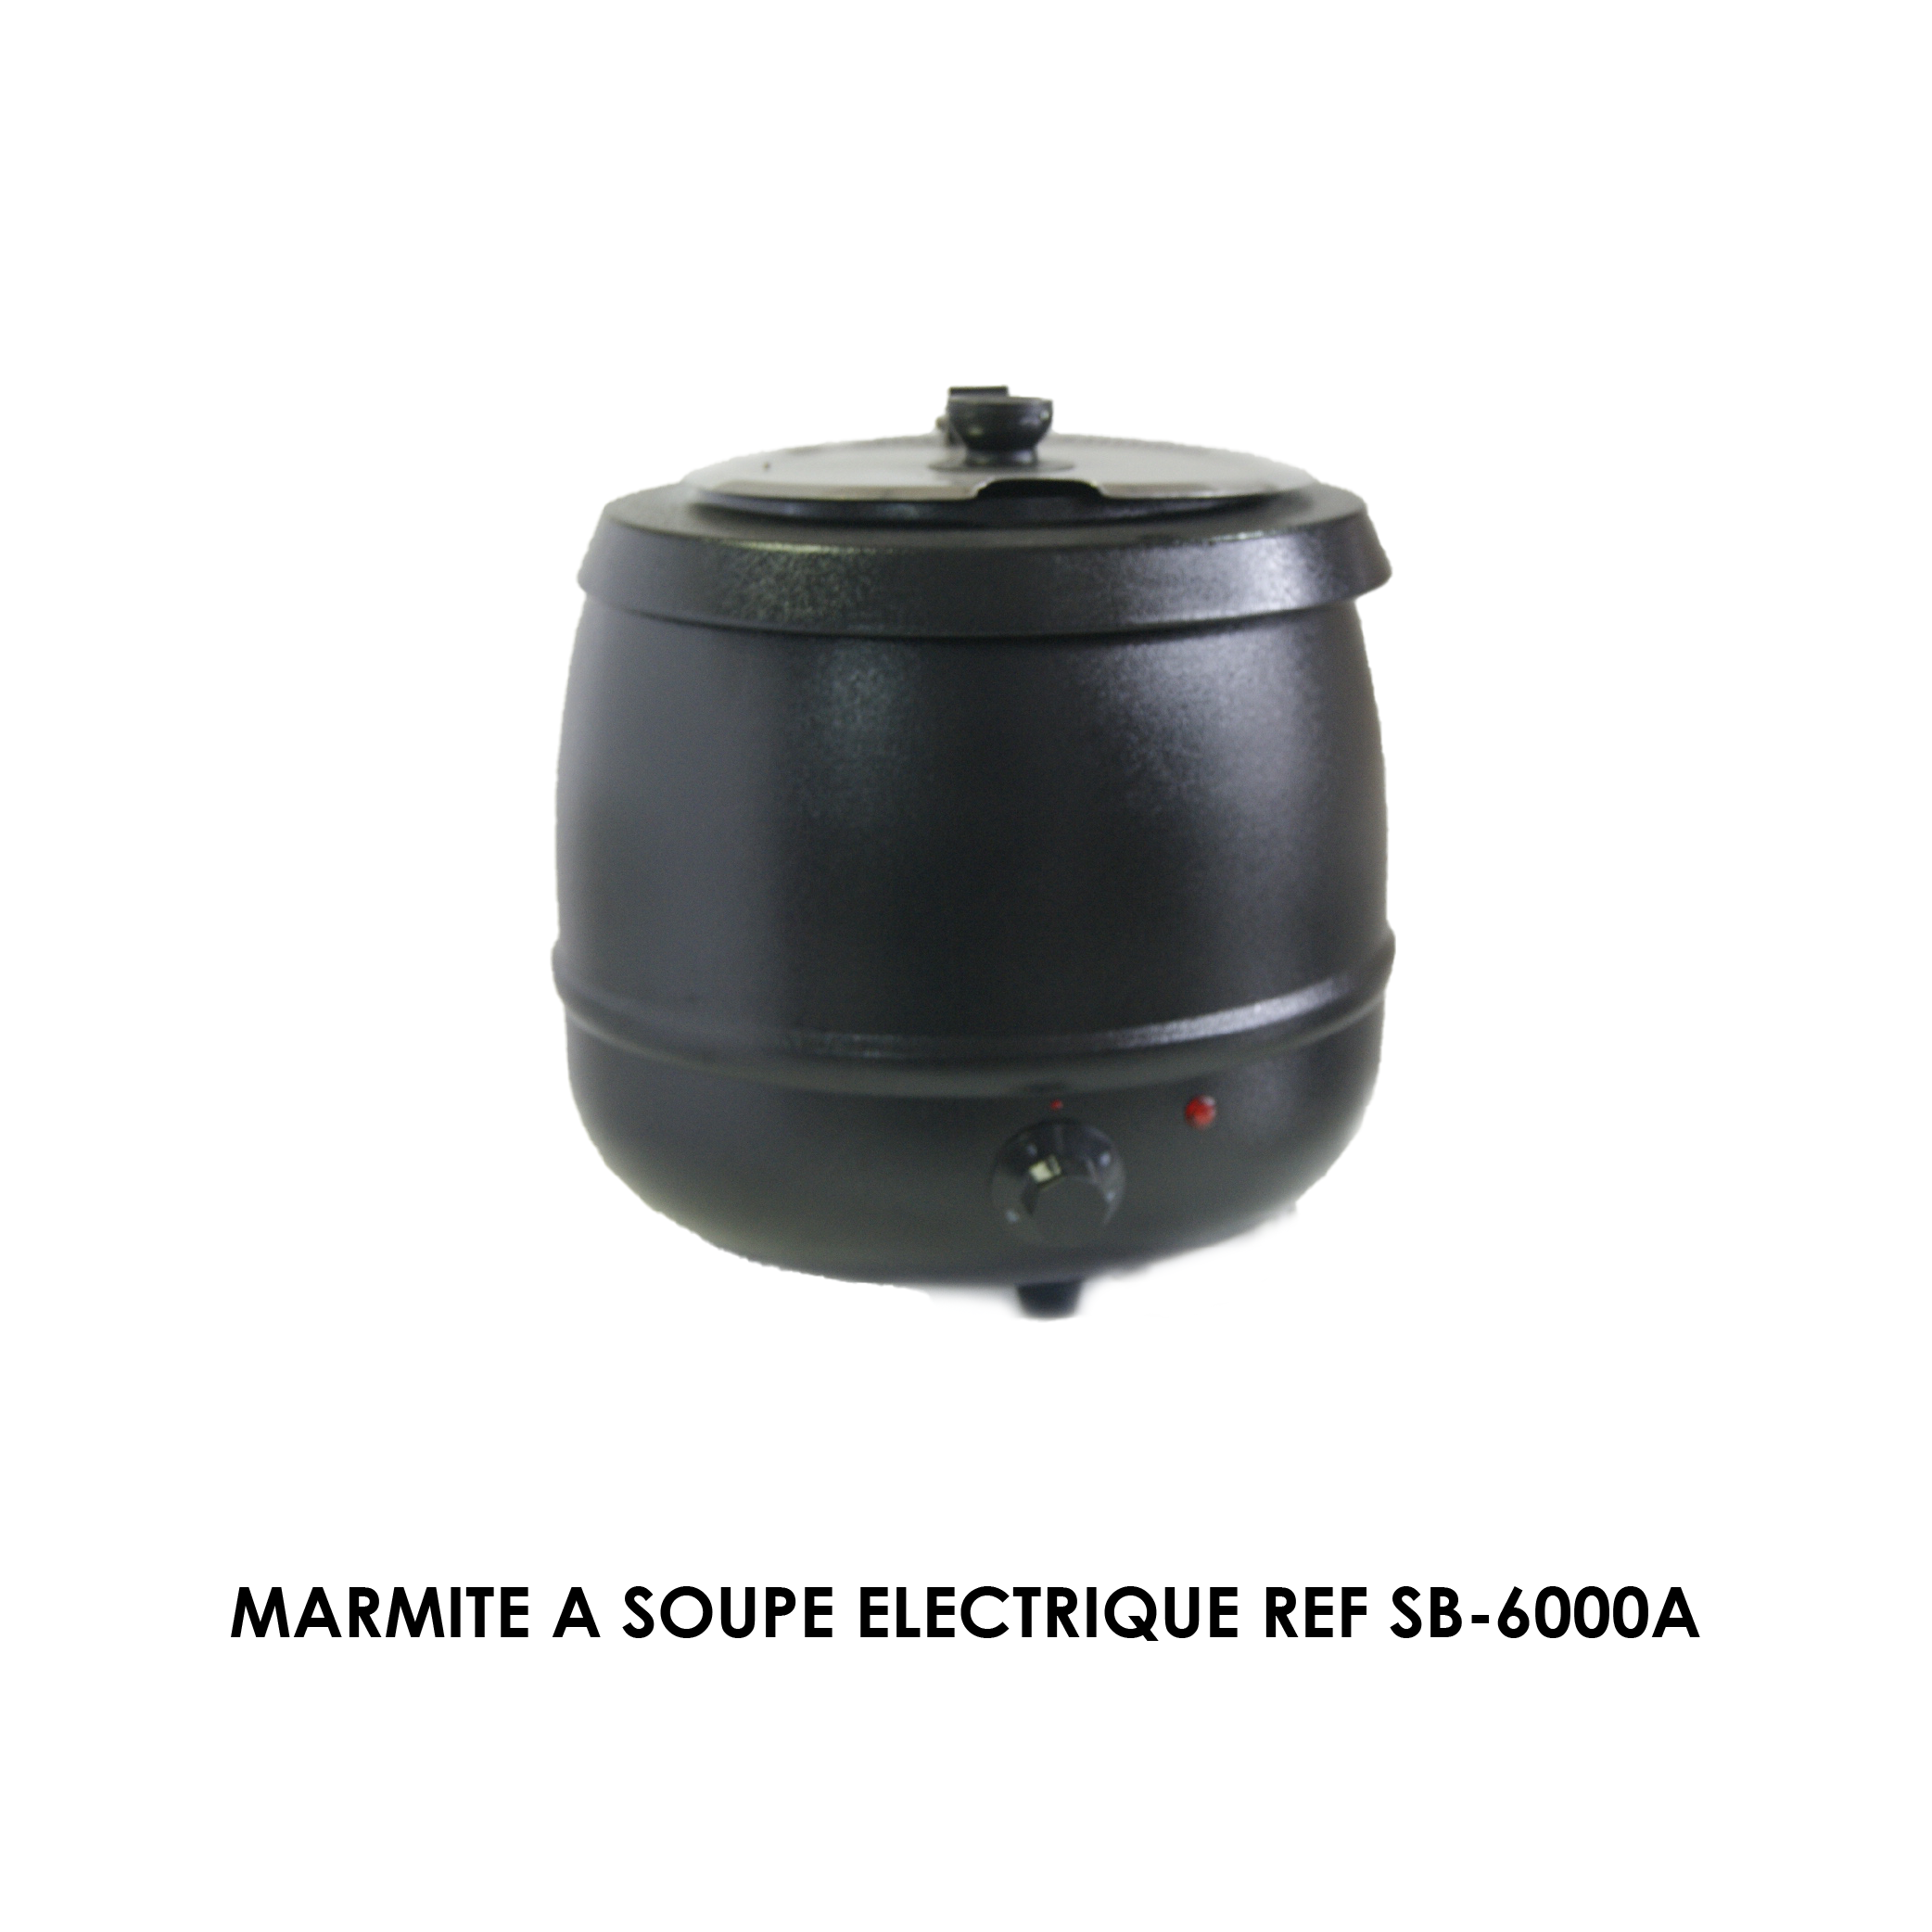 MARMITE A SOUPE ELECTRIQUE REF SB-6000A - Maroc cuisine pro